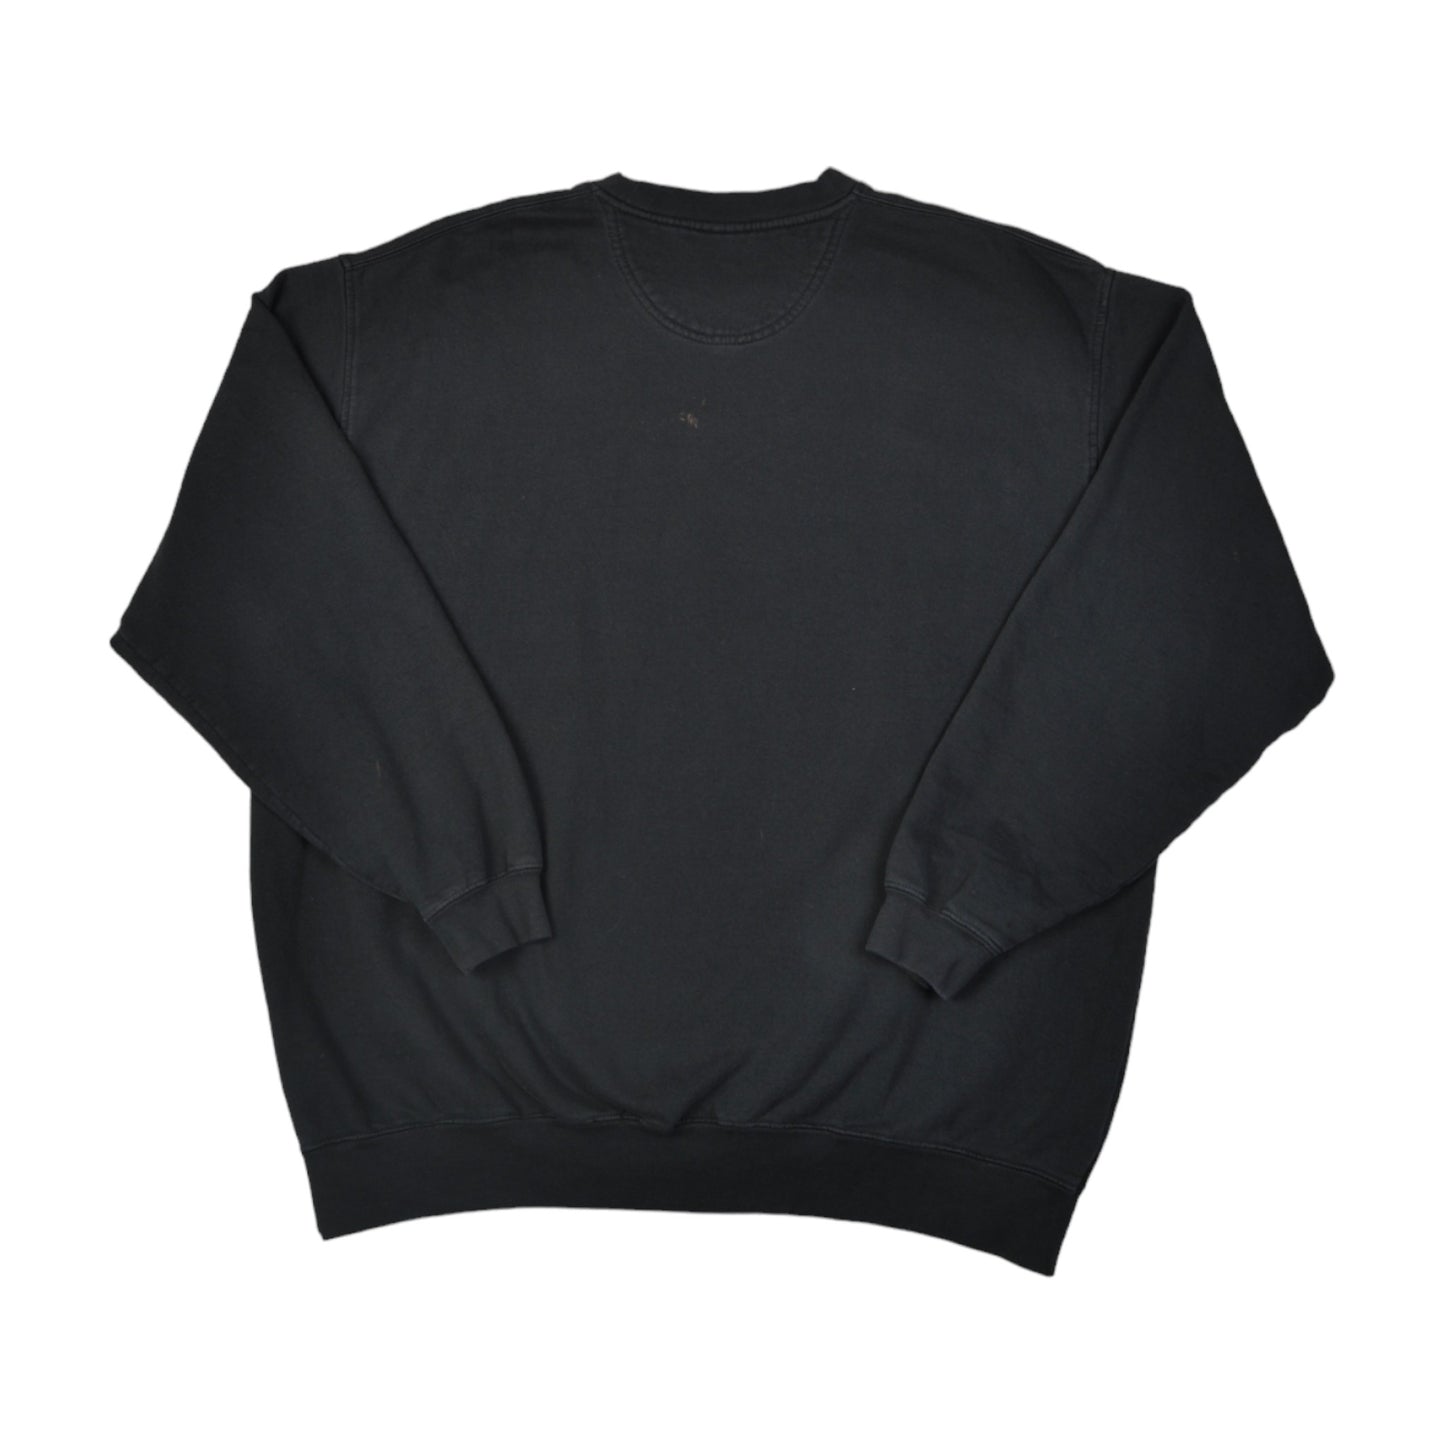 Vintage NFL Raiders Sweater Black XL